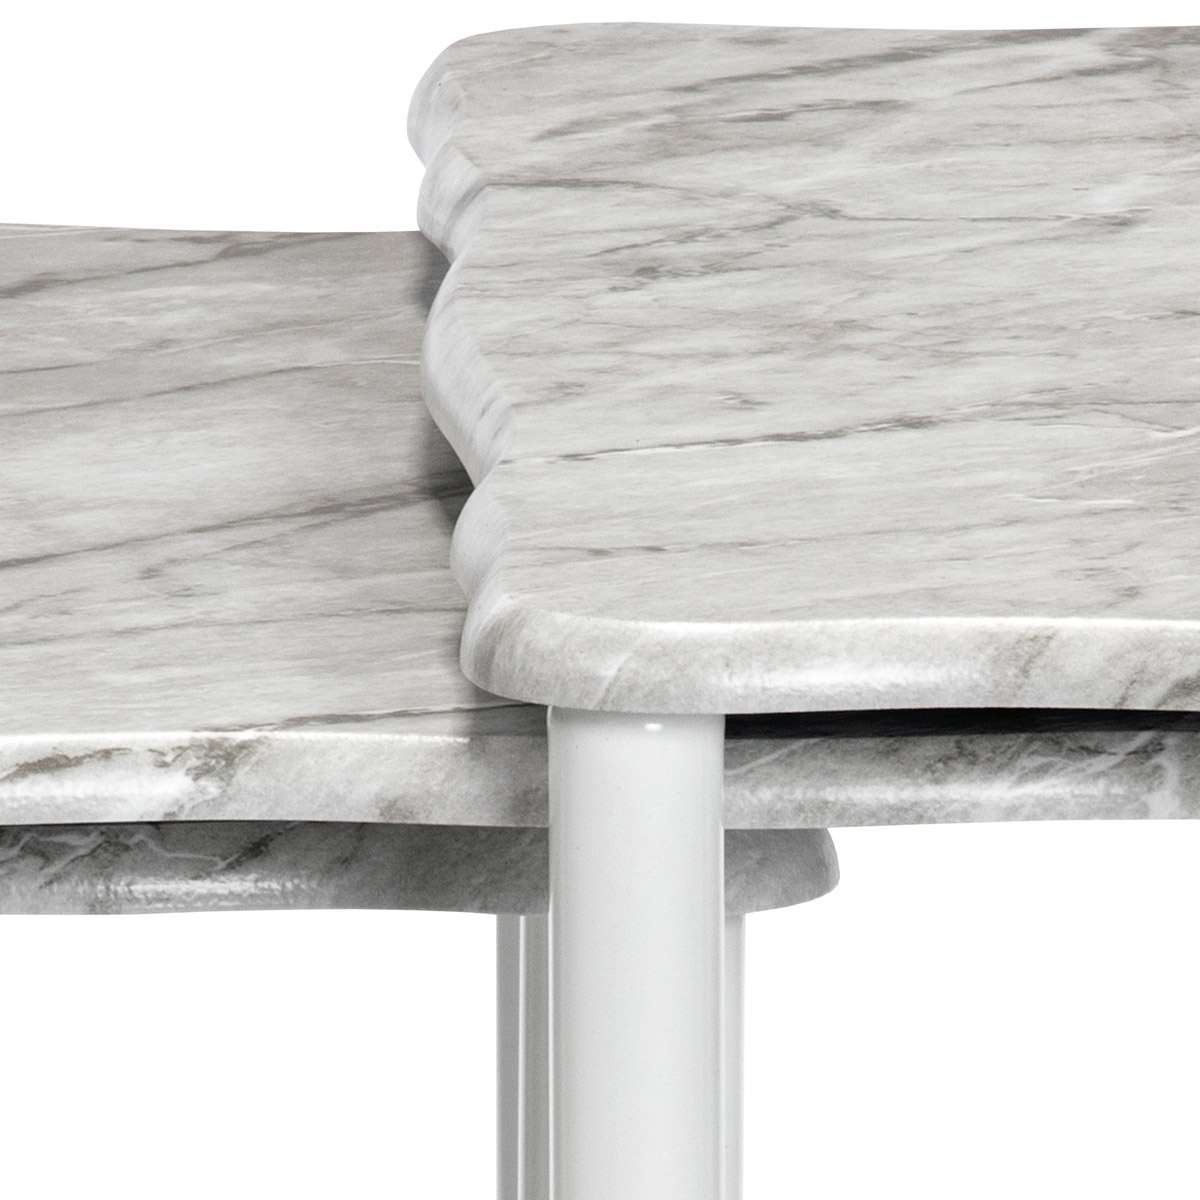 Přístavné a odkládací stolky, set 3 ks, deska šedobílý mramor, kovové nohy, bílý